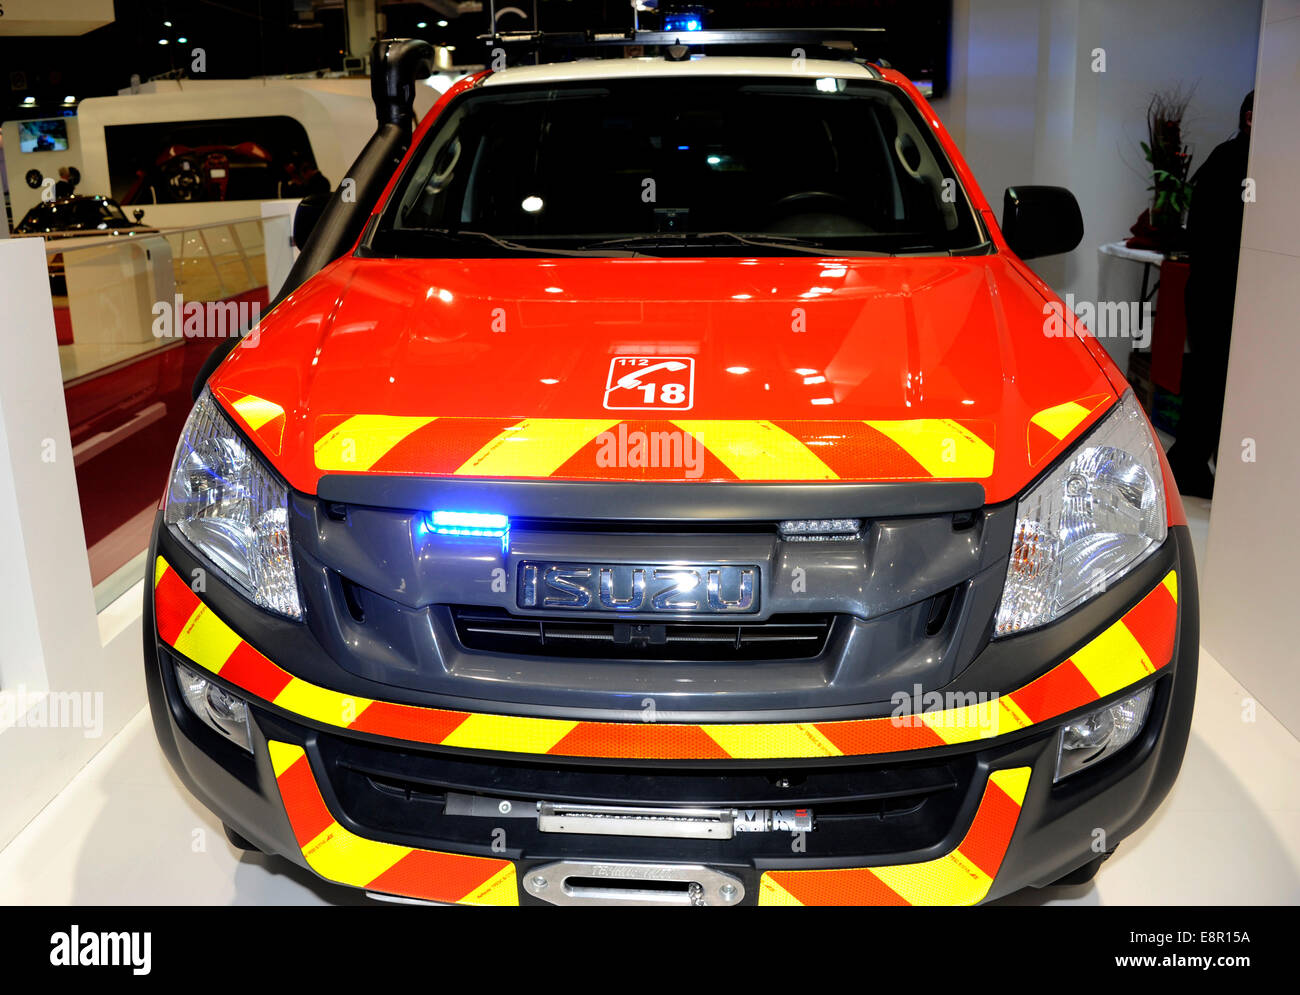 Isuzu,Fire truck,Paris Motor Show,France Stock Photo